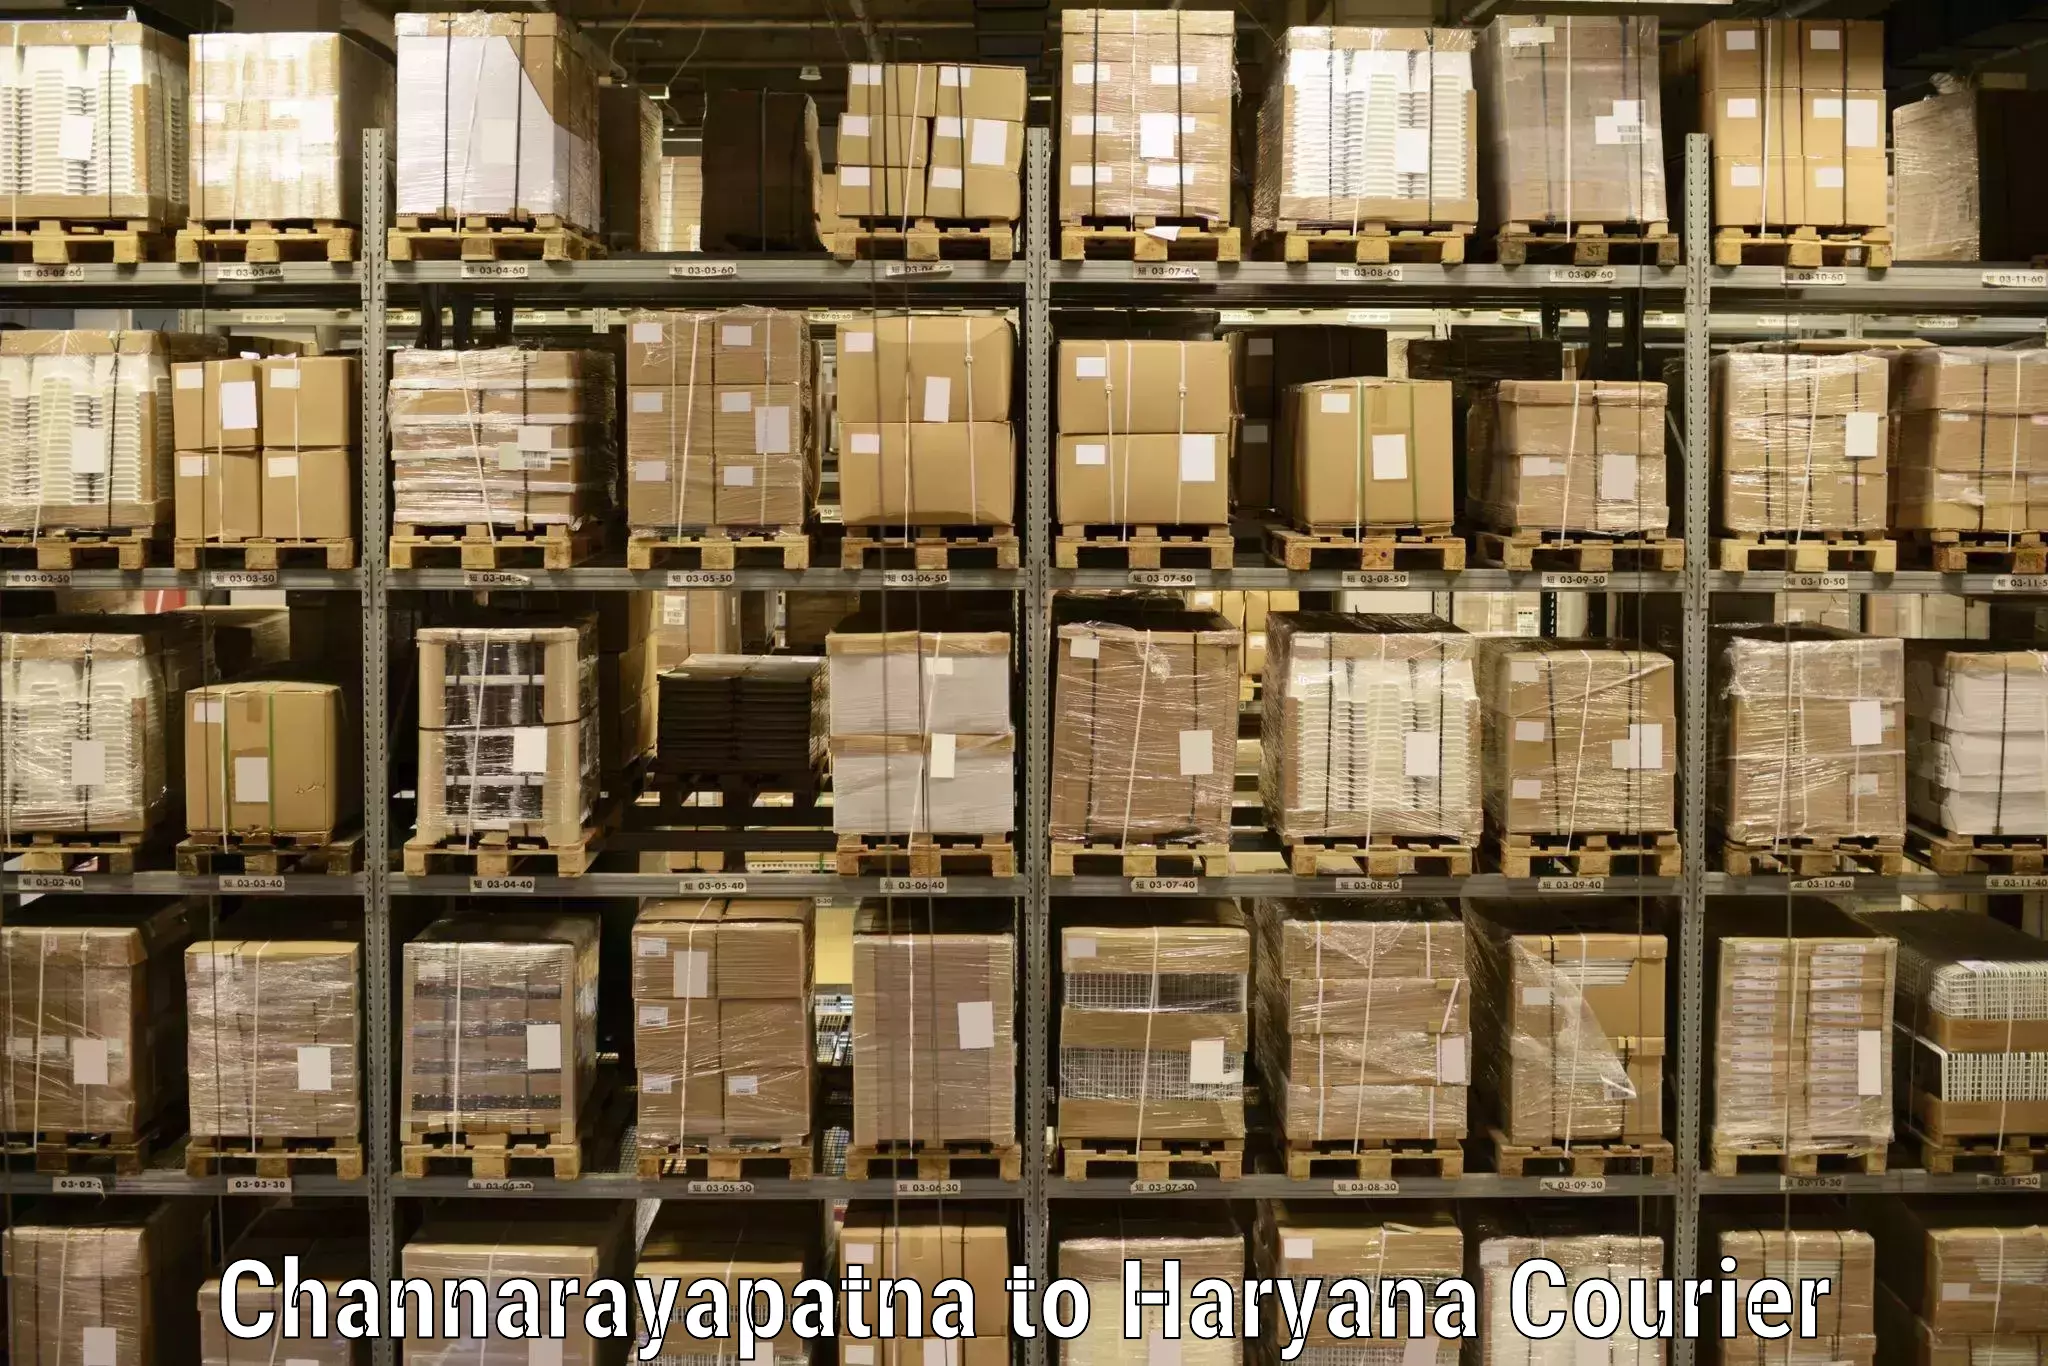 Holiday shipping services Channarayapatna to Gurugram